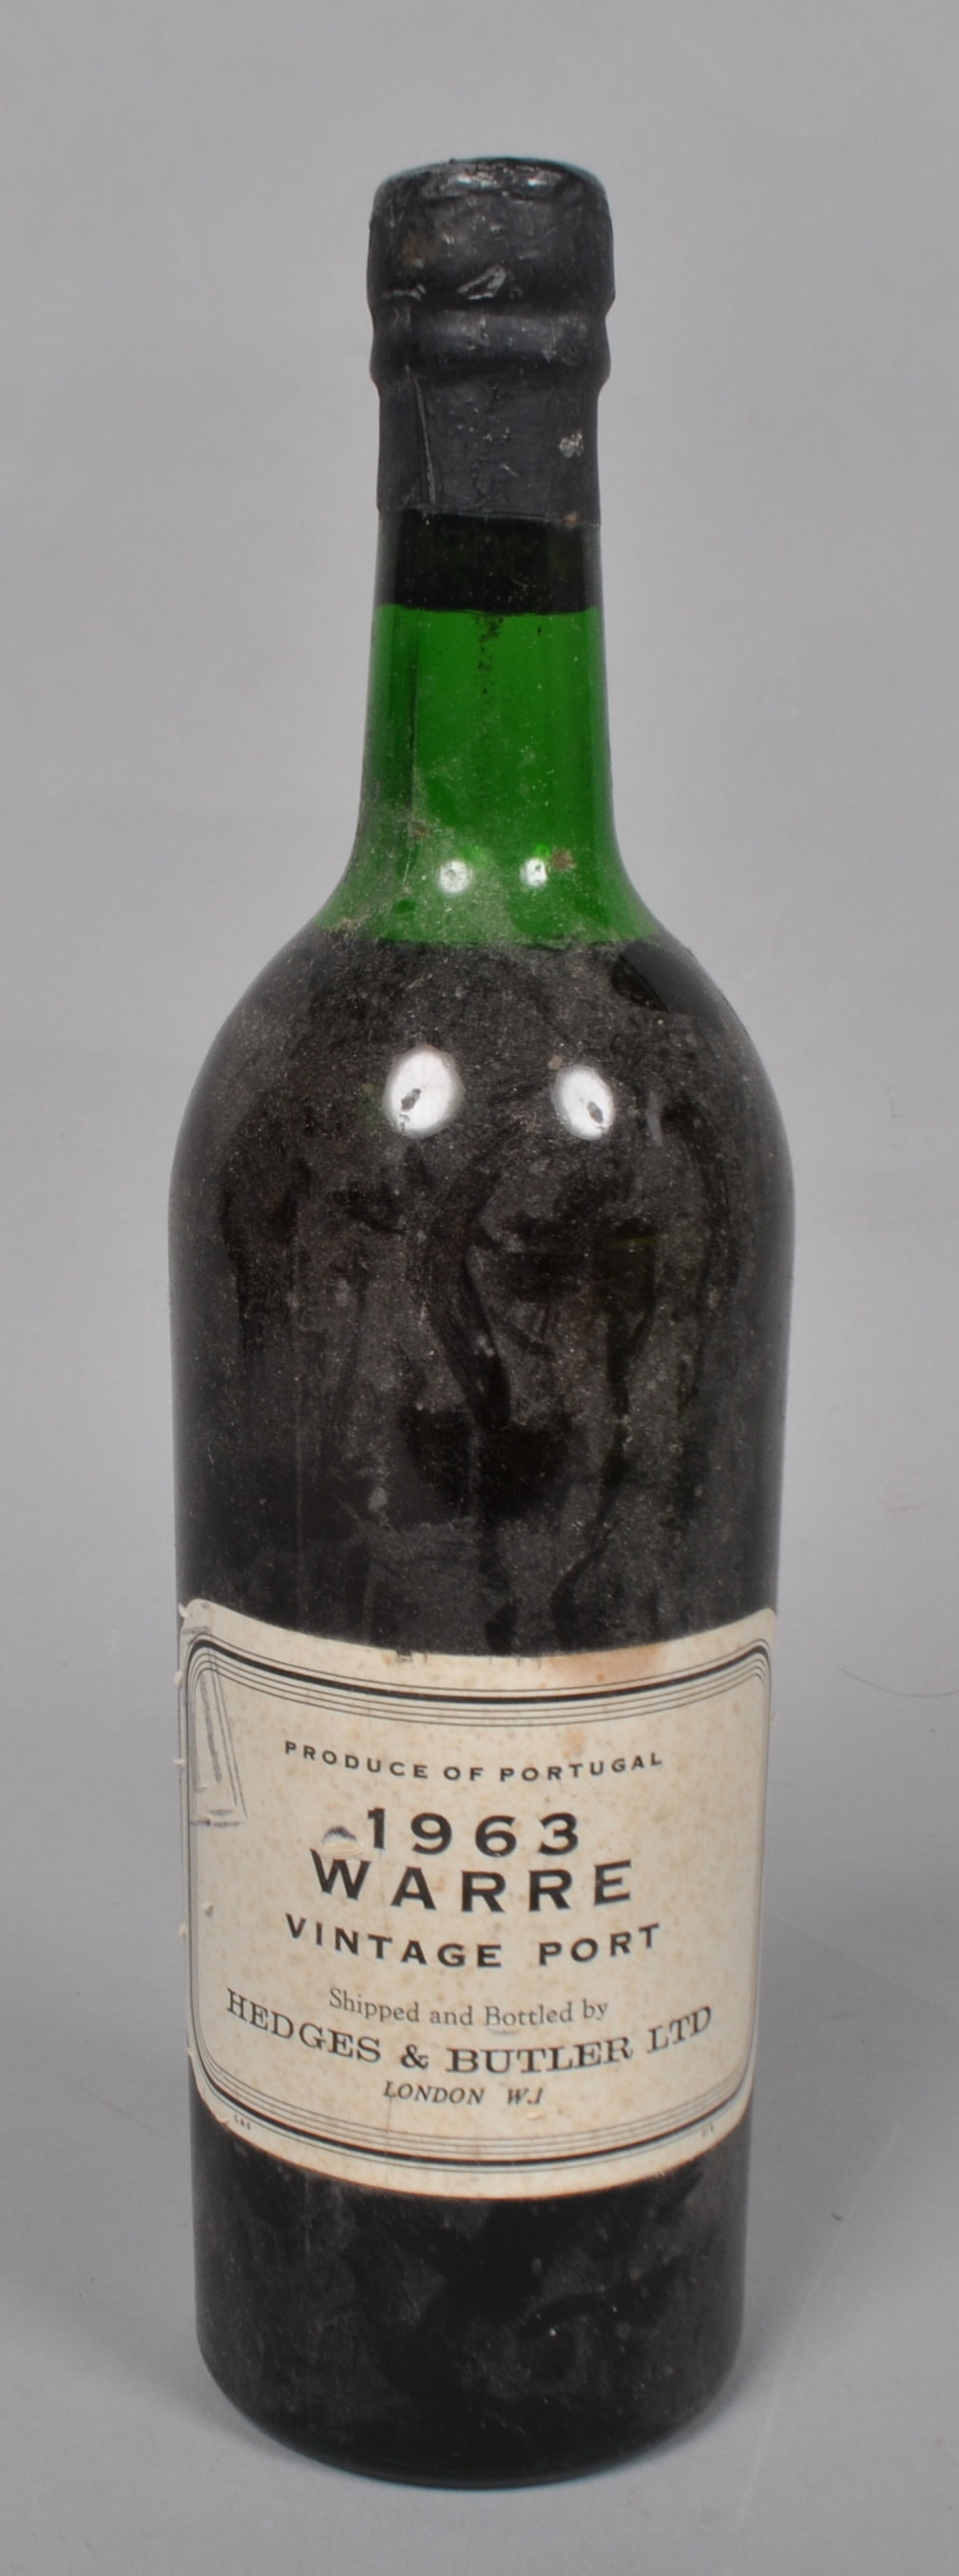 A bottle of Warres vintage port 1963